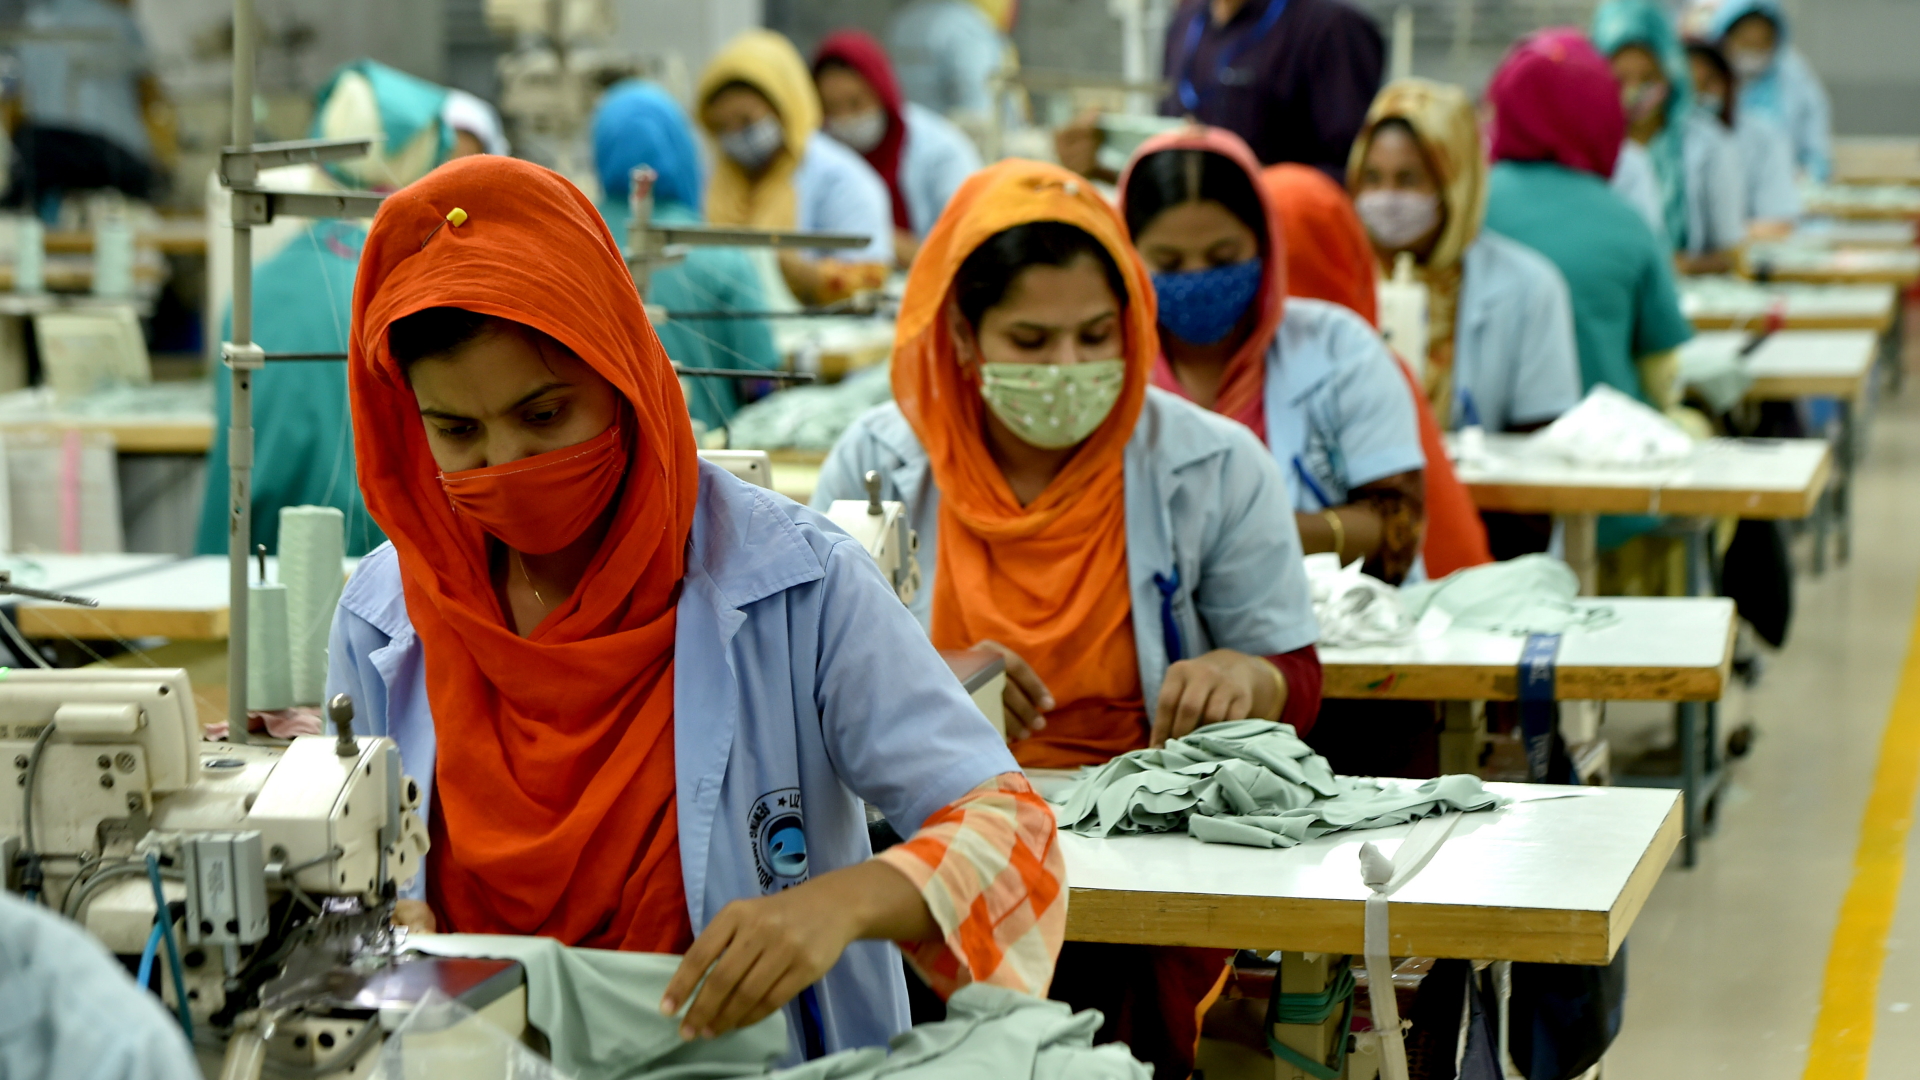 Näherinnen in einer Textilfabrik in Bangladesch | dpa